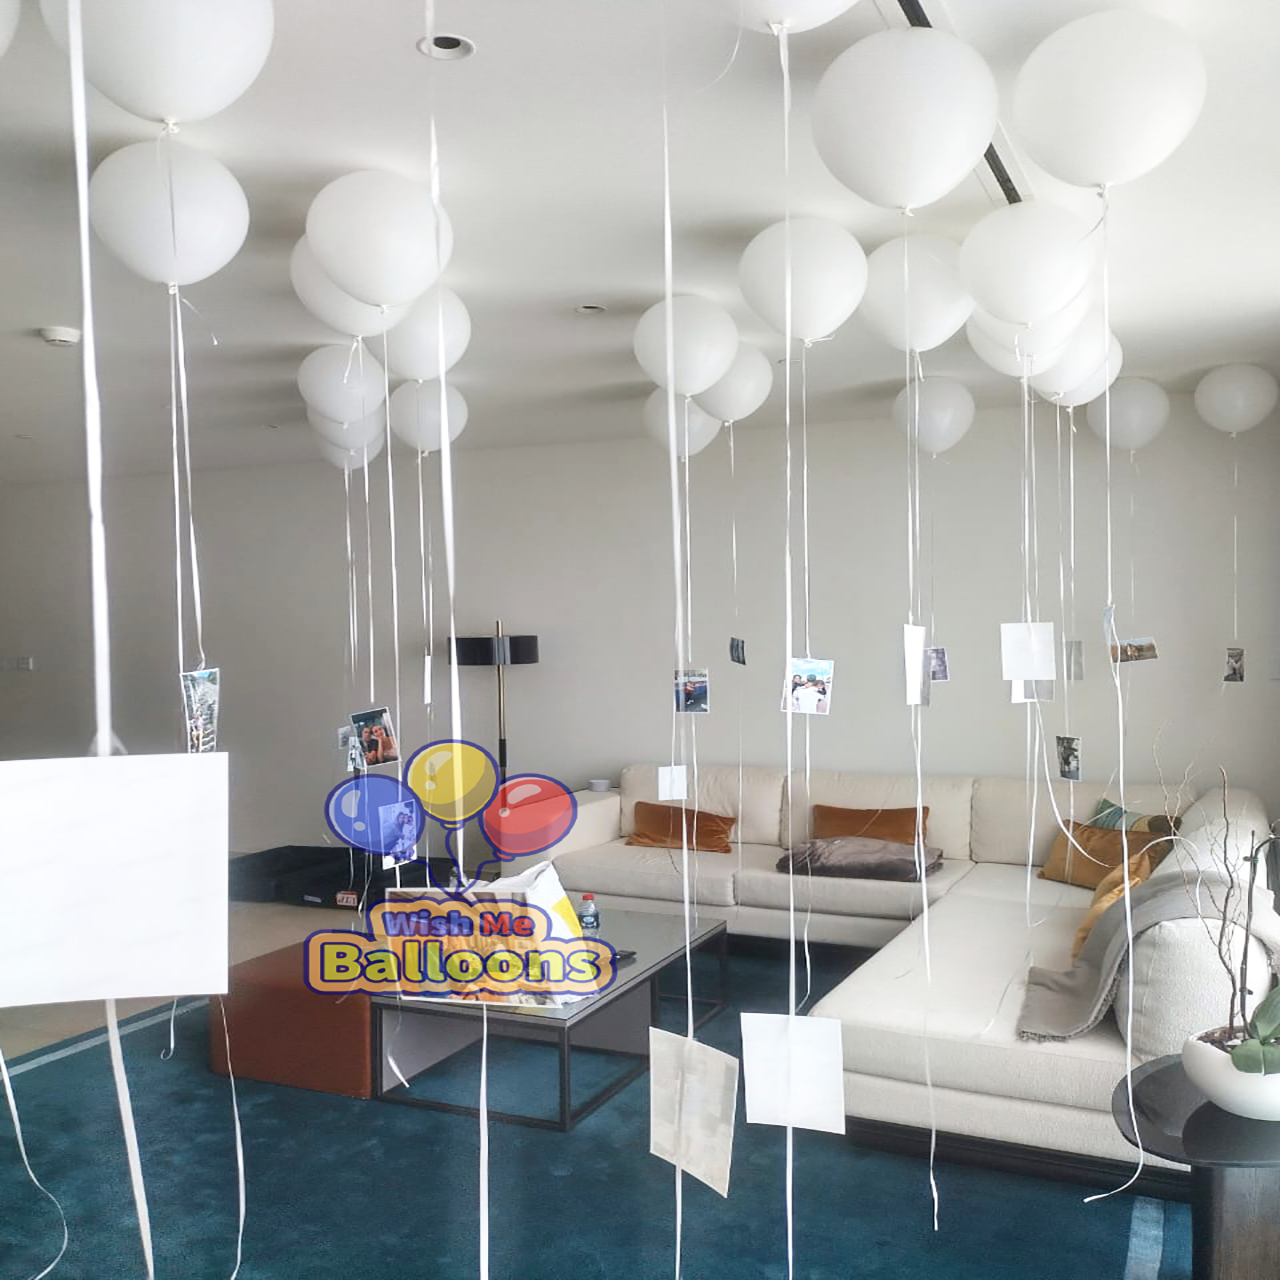 Ceiling Balloons Decor | My Deco Balloon